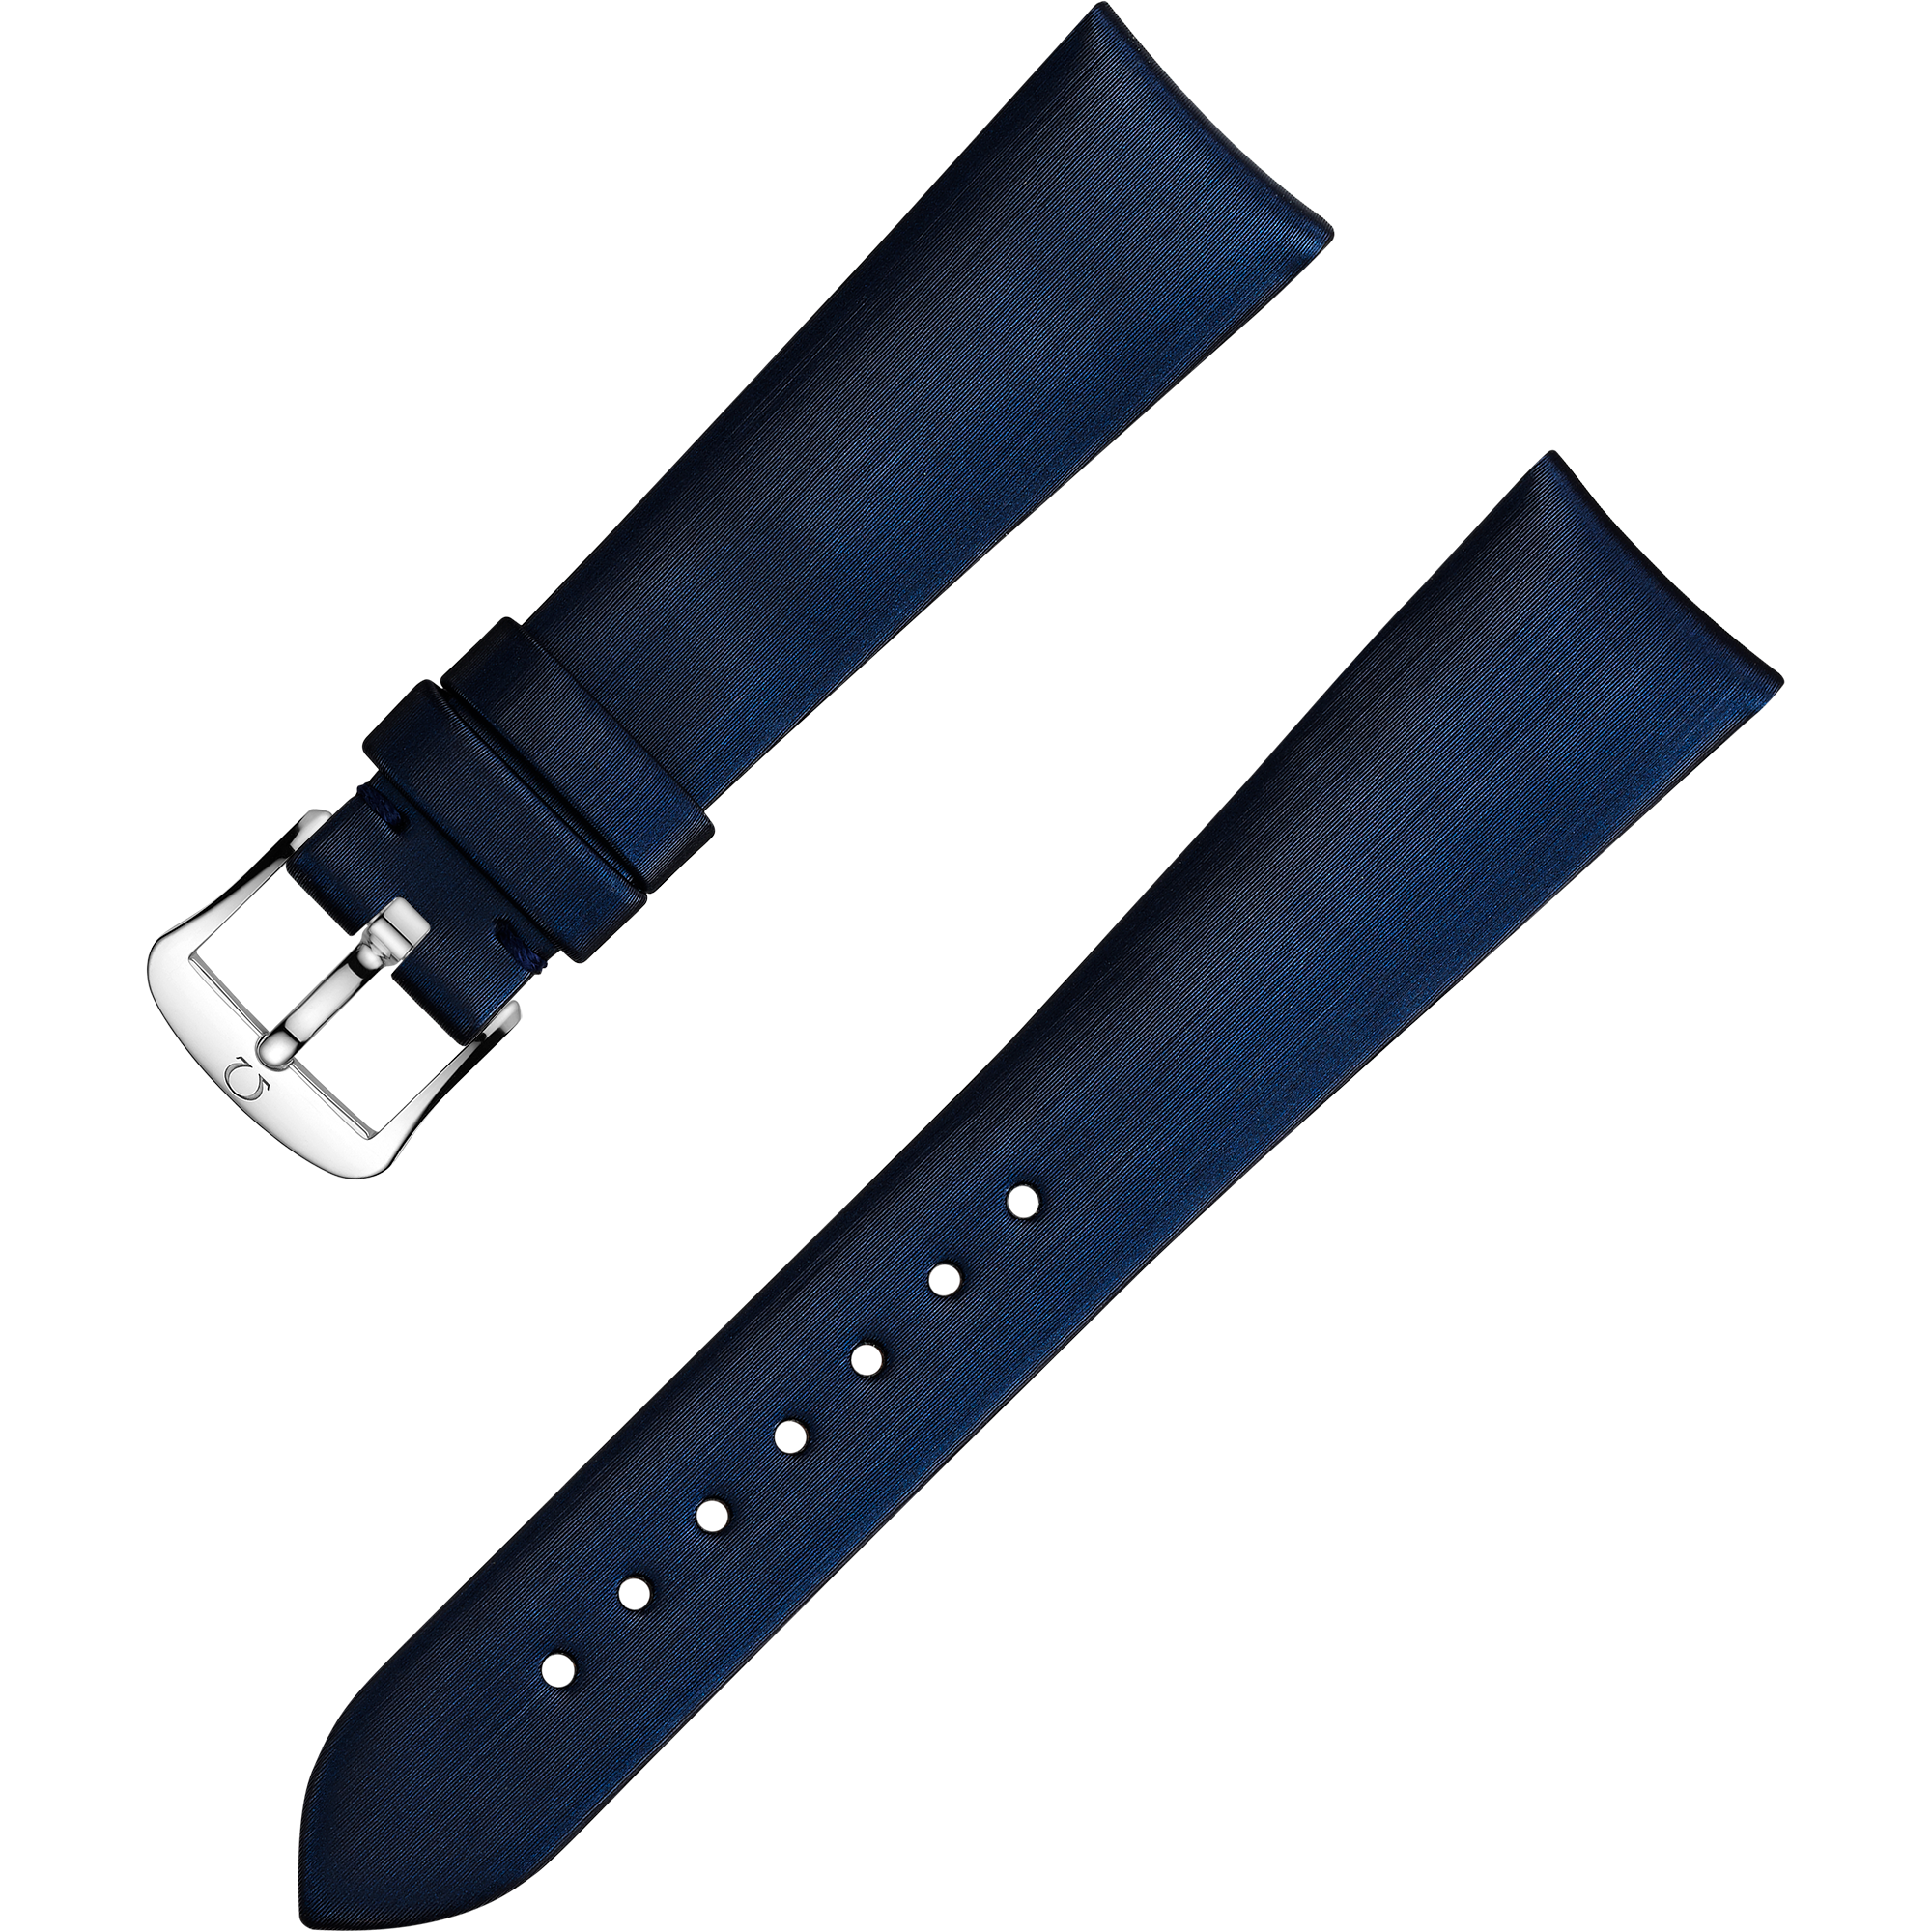 สายนาฬิกาแบบสองชิ้น - สายนาฬิกาวัสดุสังเคราะห์สีน้ำเงินผิวซาตินพร้อมหัวสายแบบหัวเข็มขัด - 032CWZ009997